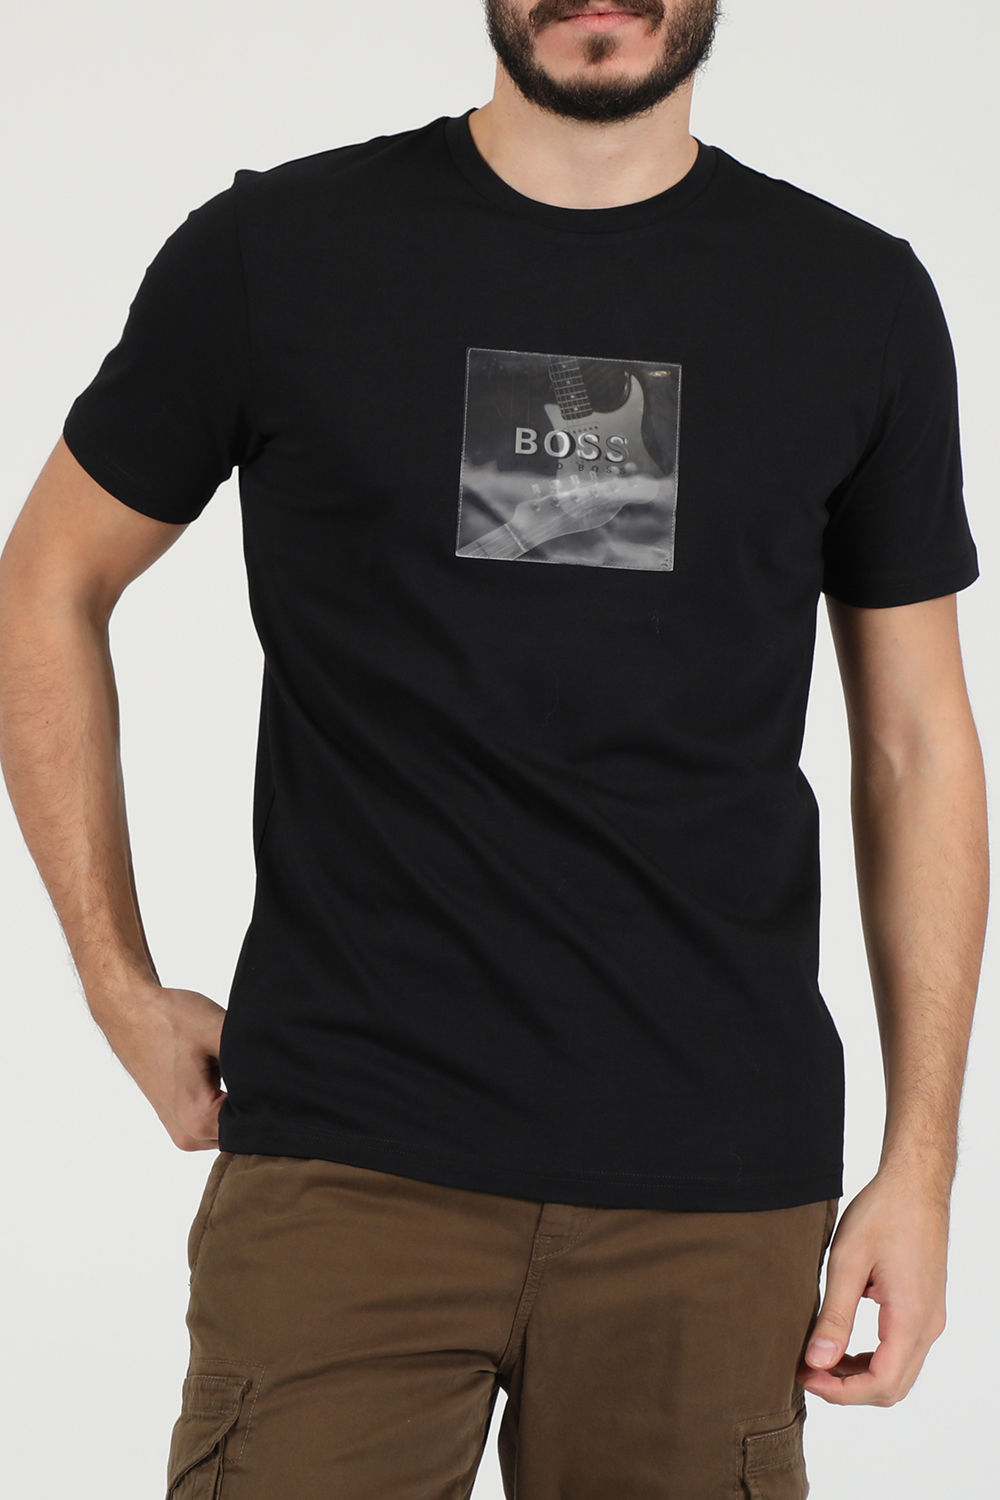 Ανδρικά/Ρούχα/Μπλούζες/Κοντομάνικες BOSS - Ανδρικό t-shirt BOSS TLenticular μαύρο